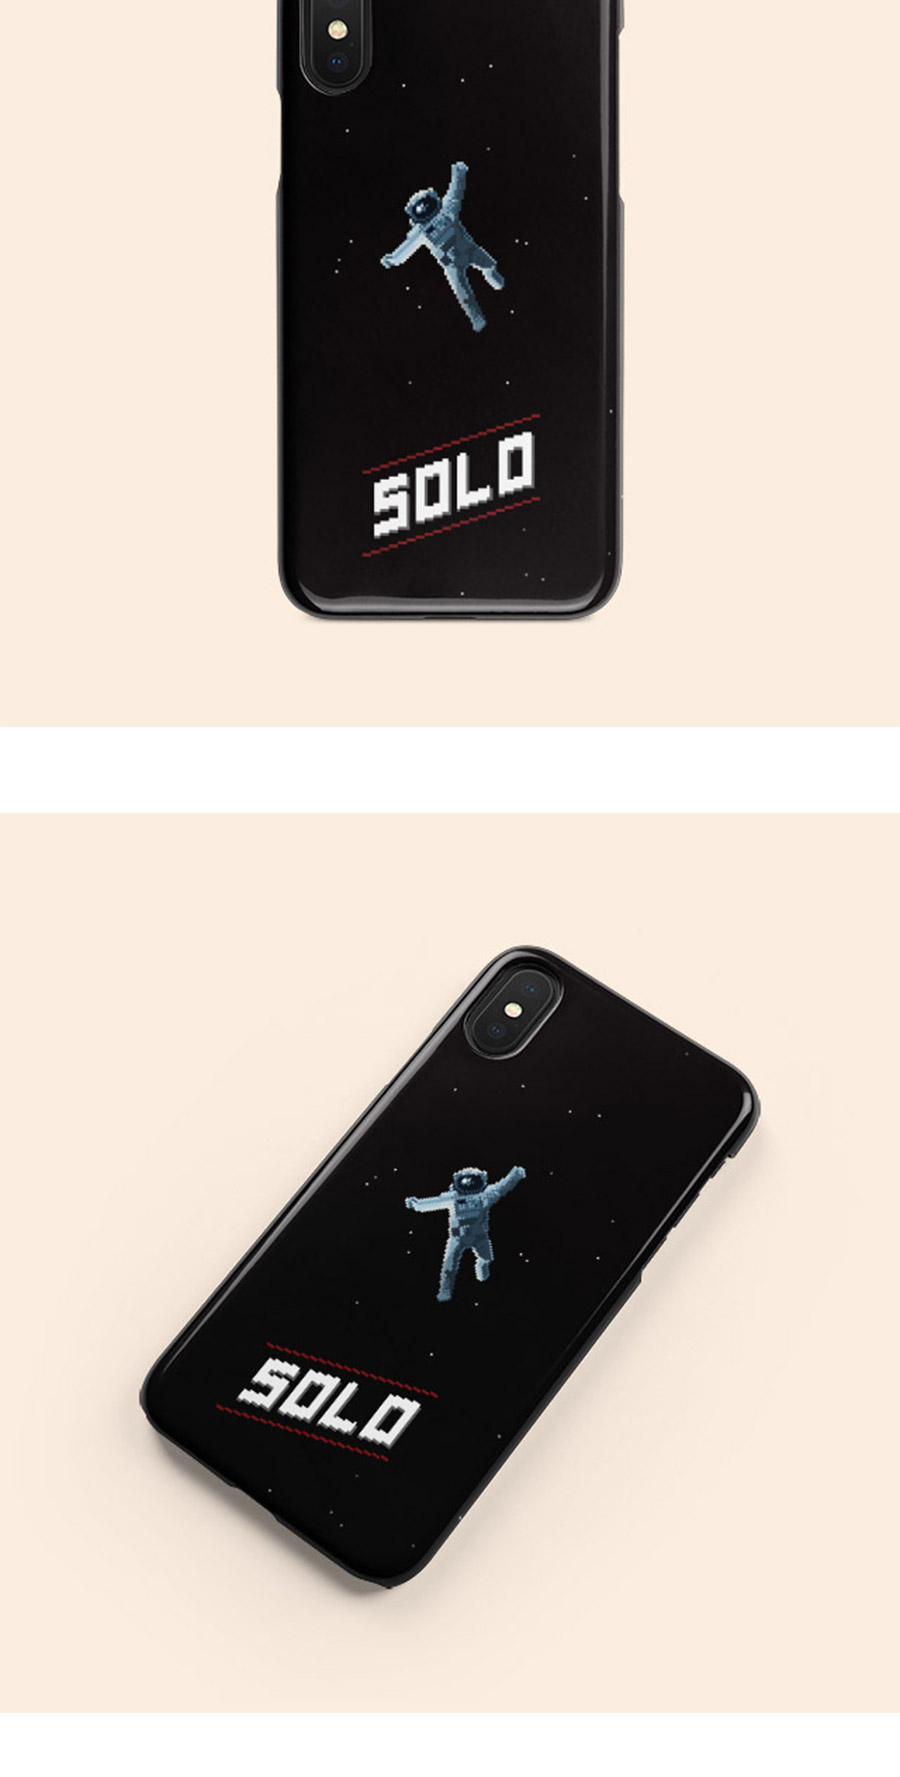 SOLO 아이폰 갤럭시 하드 케이스 19,800원 - 뚜주르누보 디지털, 삼성, 케이스, 갤럭시S9/S9플러스 바보사랑 SOLO 아이폰 갤럭시 하드 케이스 19,800원 - 뚜주르누보 디지털, 삼성, 케이스, 갤럭시S9/S9플러스 바보사랑